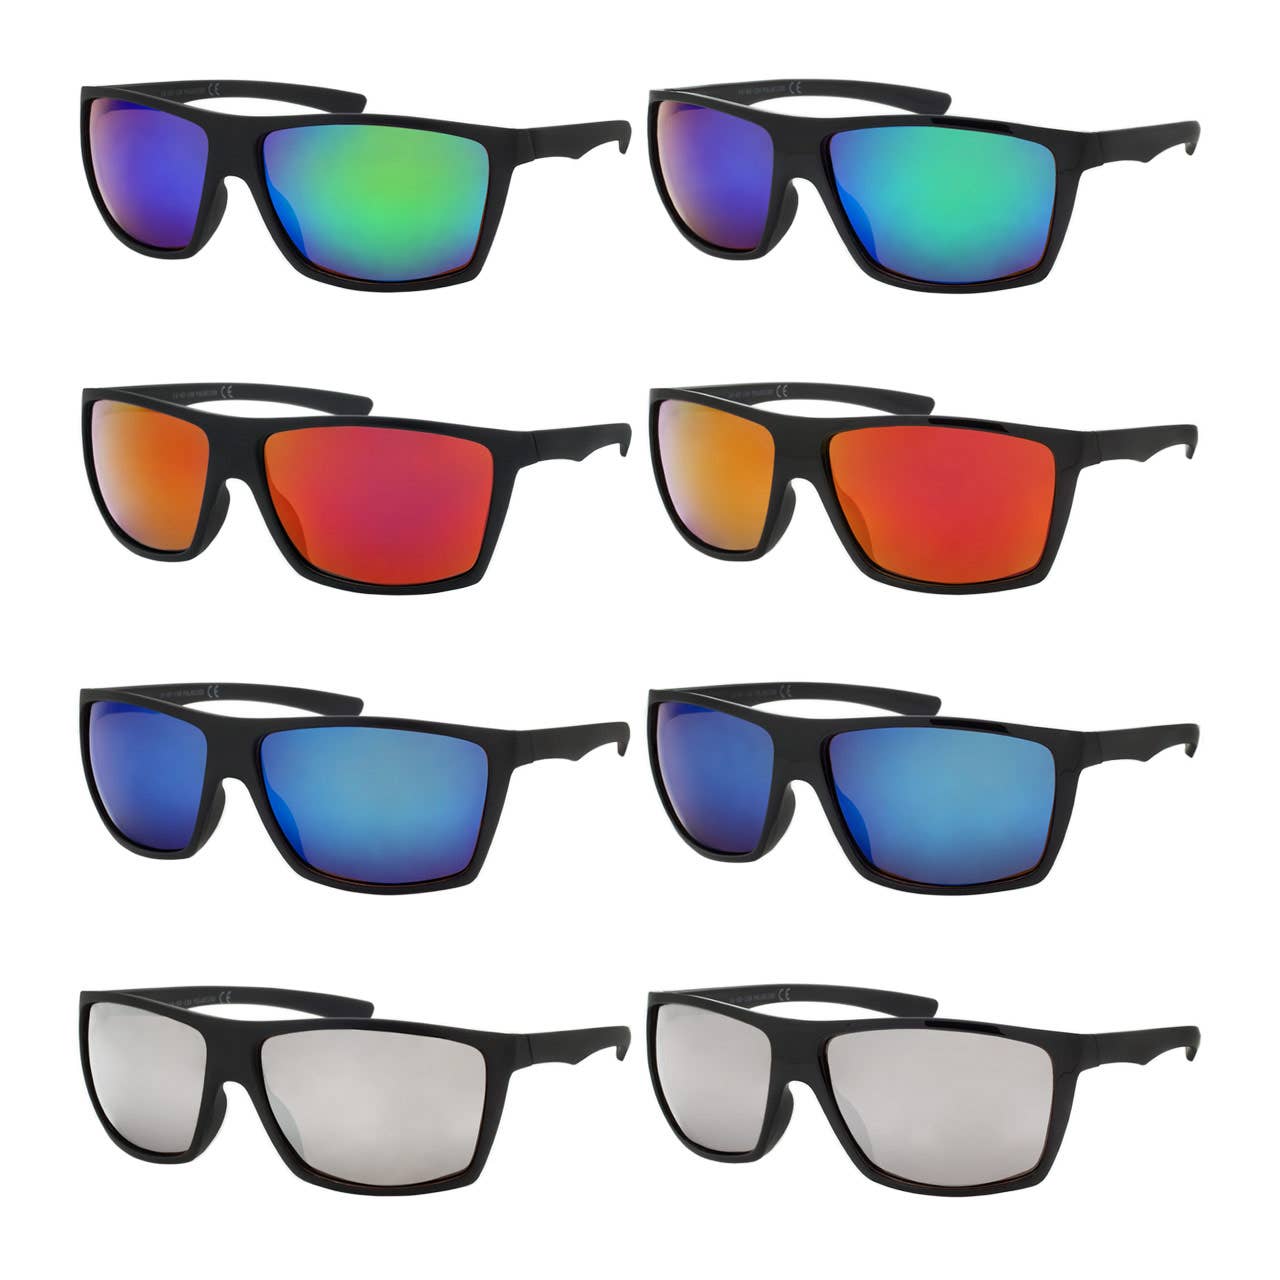 Shark Eyes, Inc - Gafas de sol polarizadas con espejo de color para hombre estilo envolvente Fish Activ